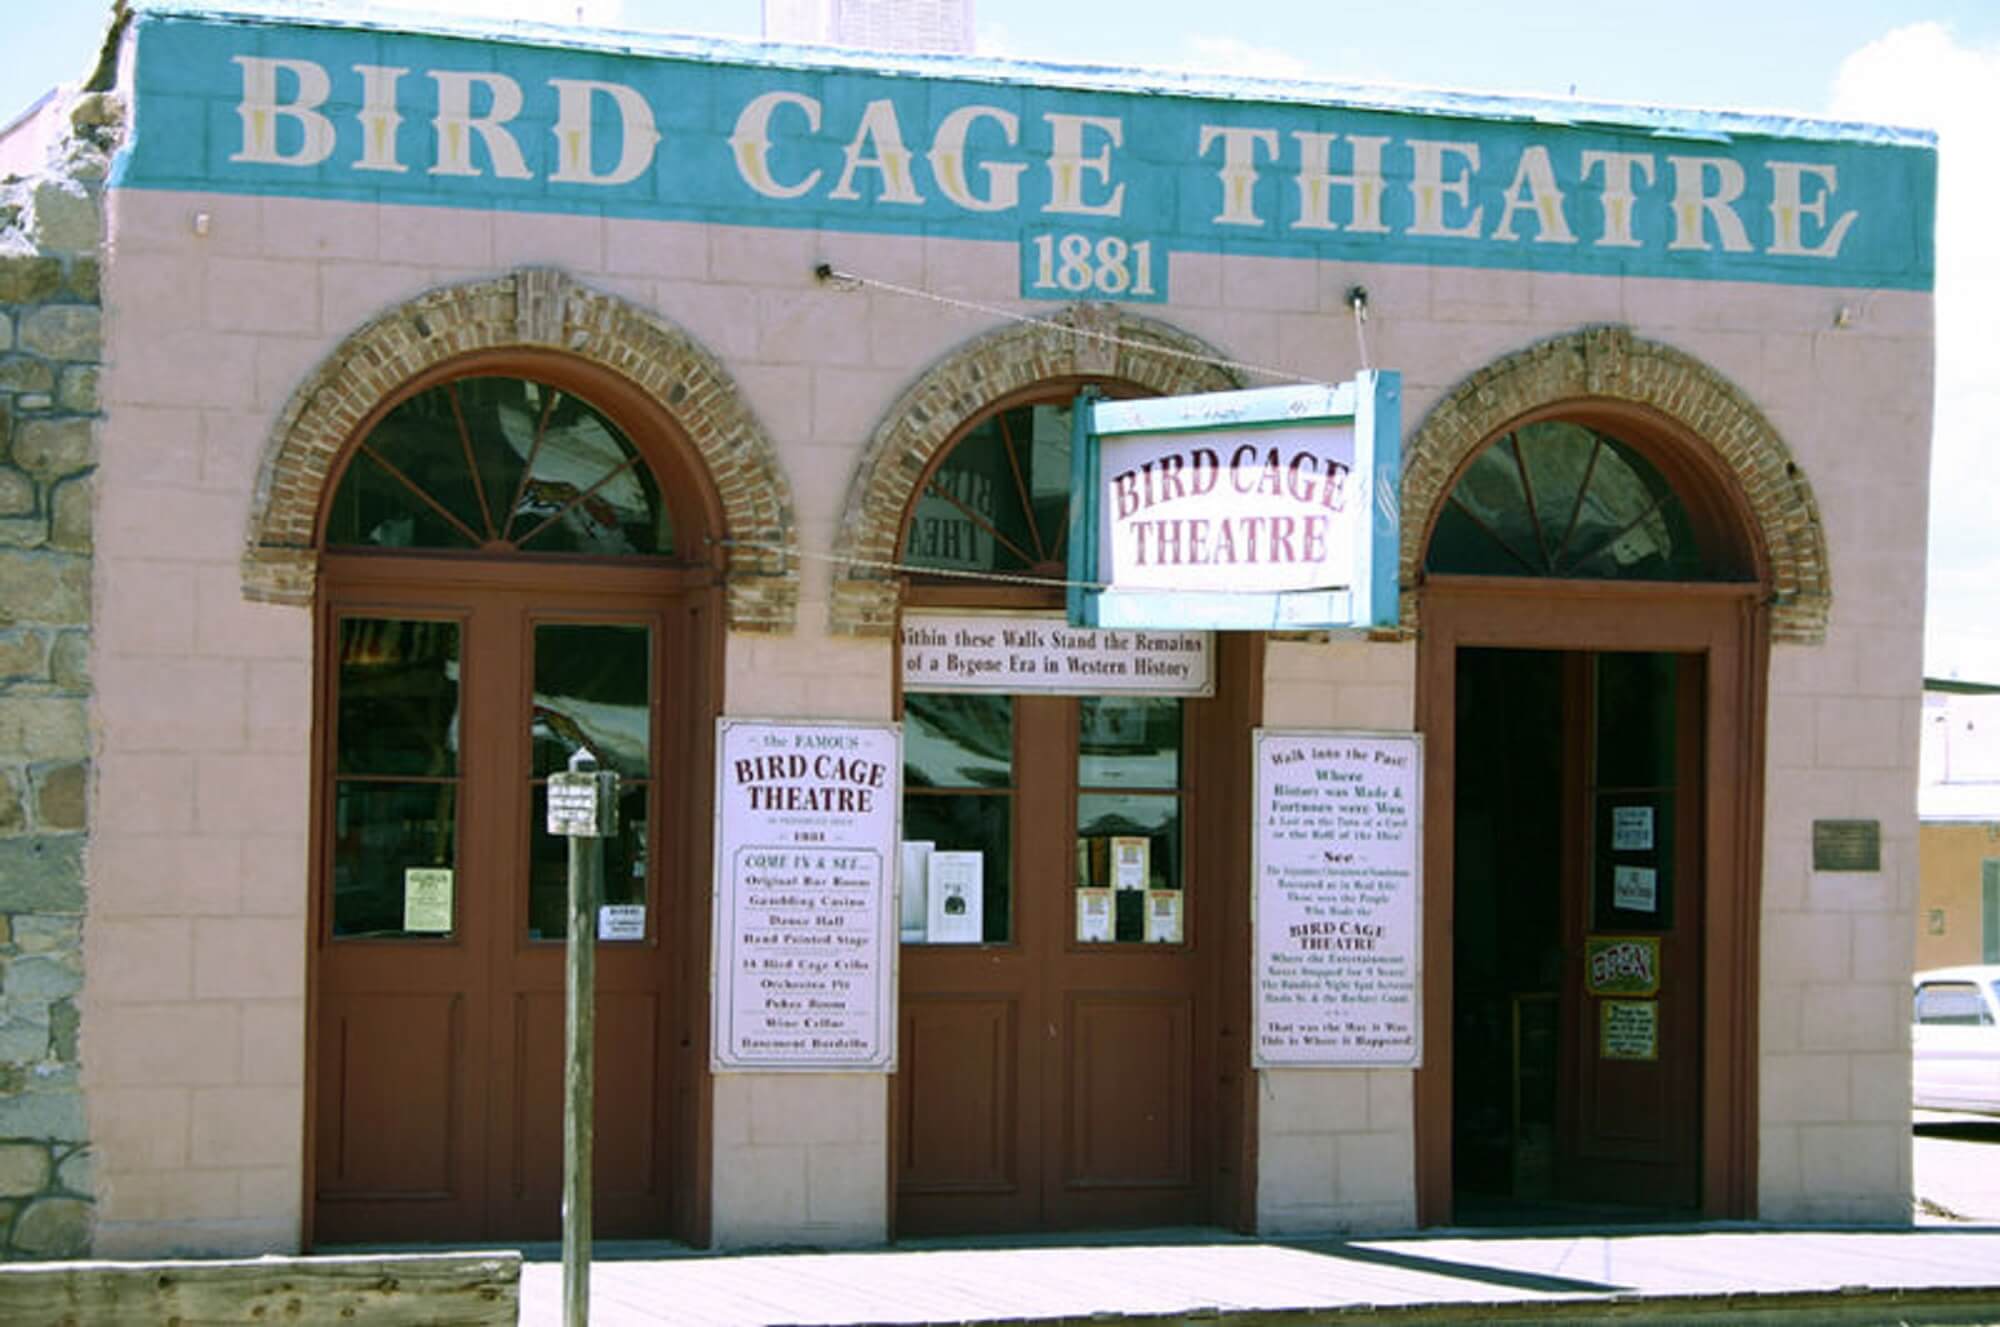 BirdcageTheater-1